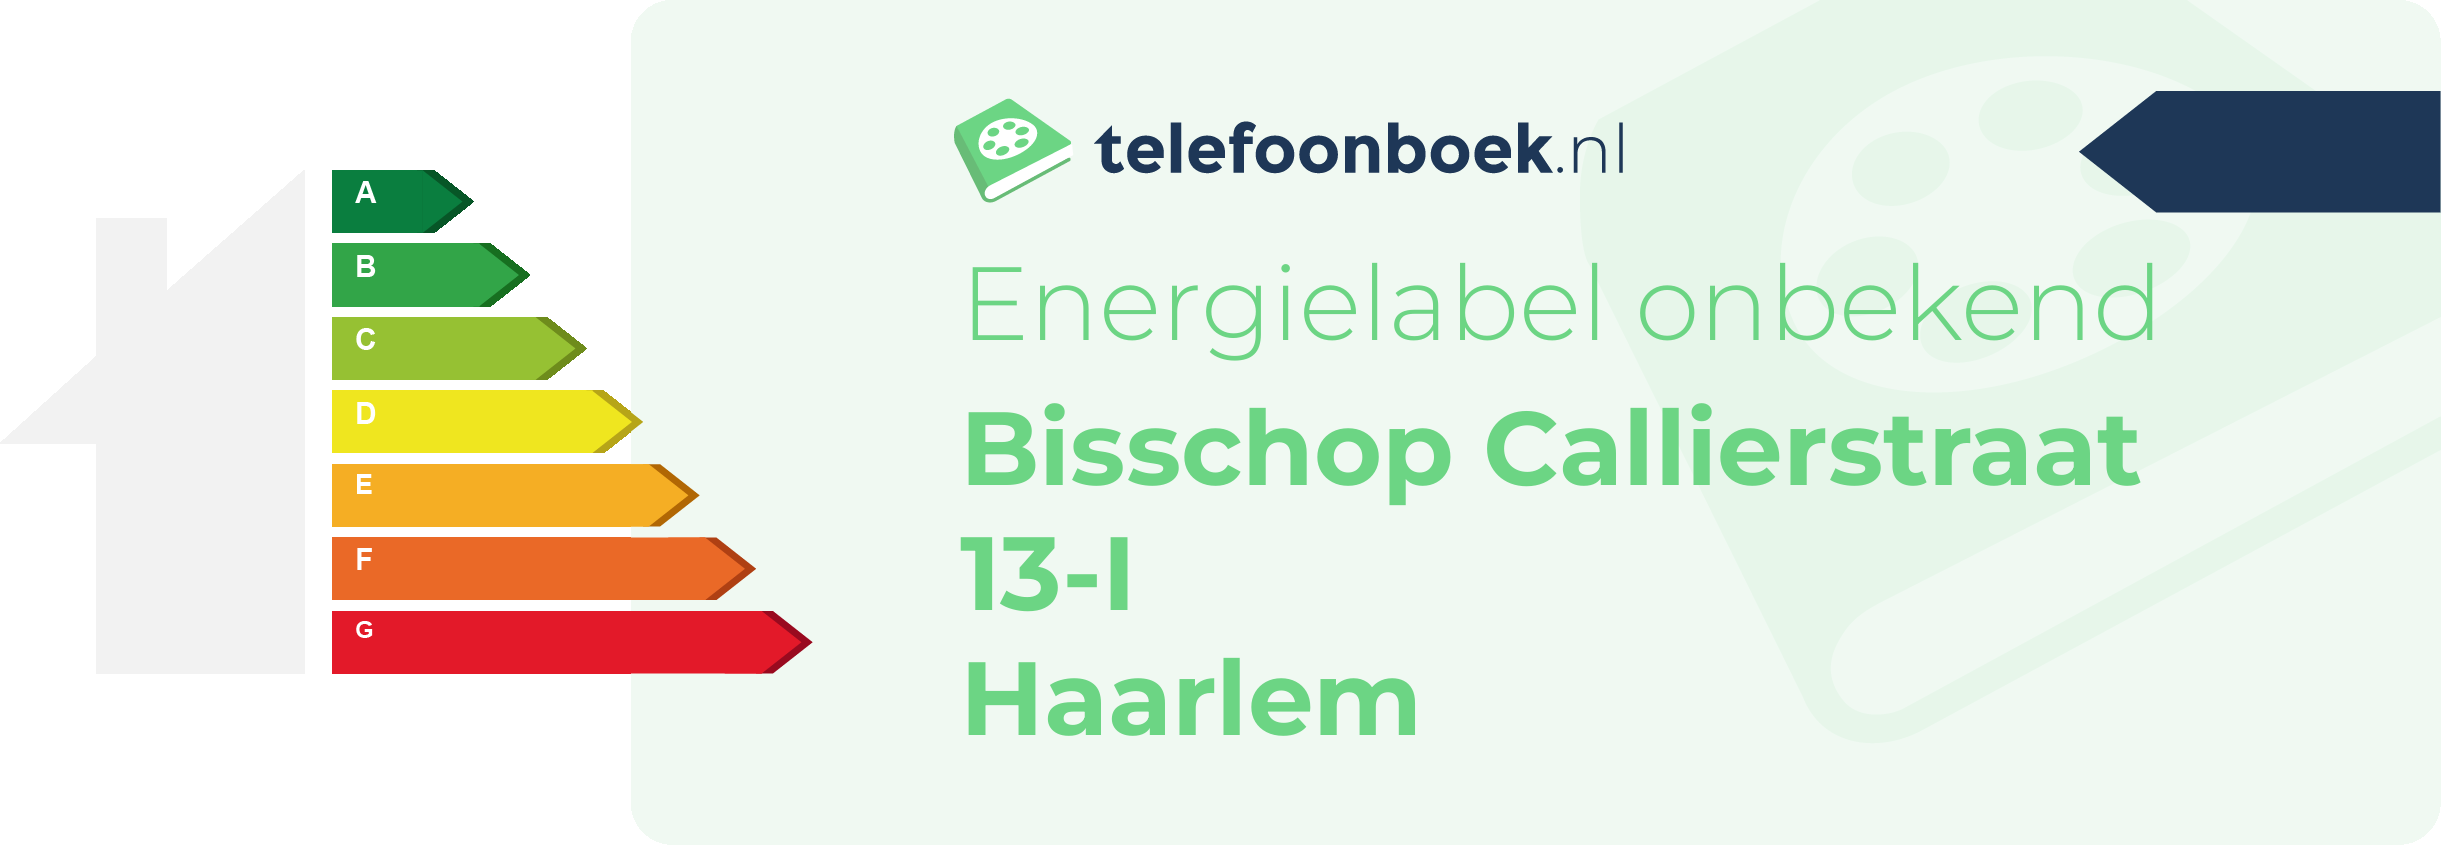 Energielabel Bisschop Callierstraat 13-I Haarlem